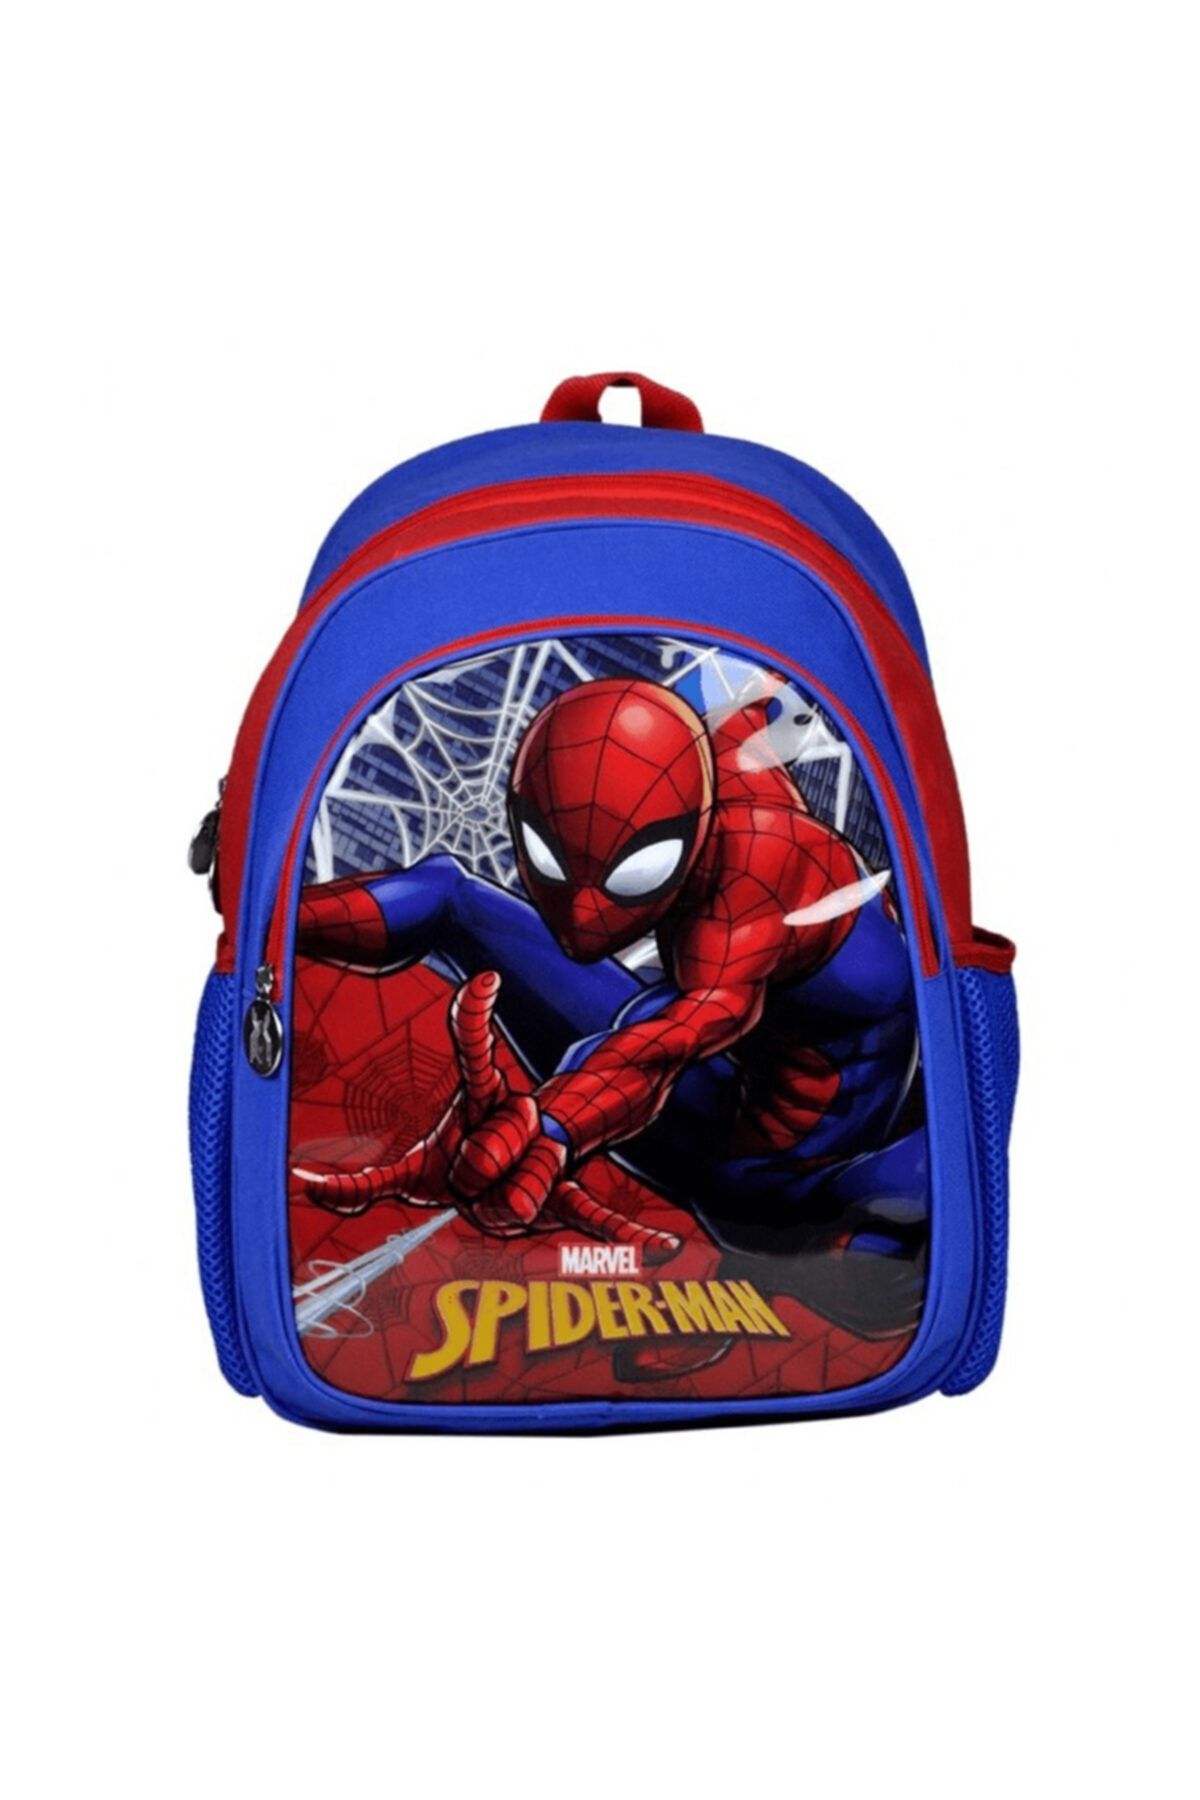 Hakan Çanta Spiderman Okul Çantası 96625